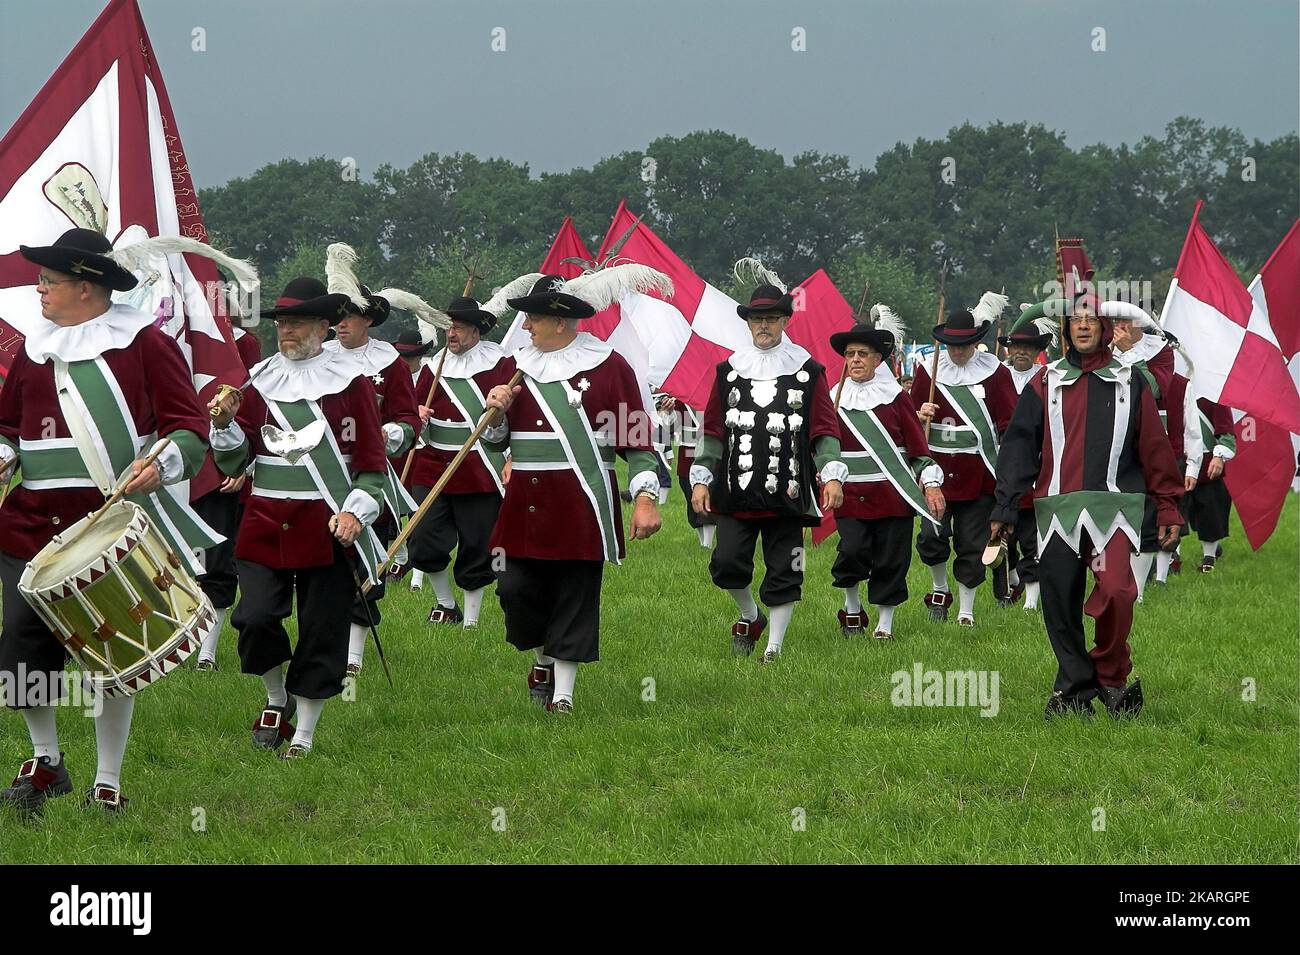 Heeswijk, Niederlande, Europäische Gemeinschaft Historischer Schützen; Marschprozession mit Trommeln und Bannern in historischen Kostümen Stockfoto